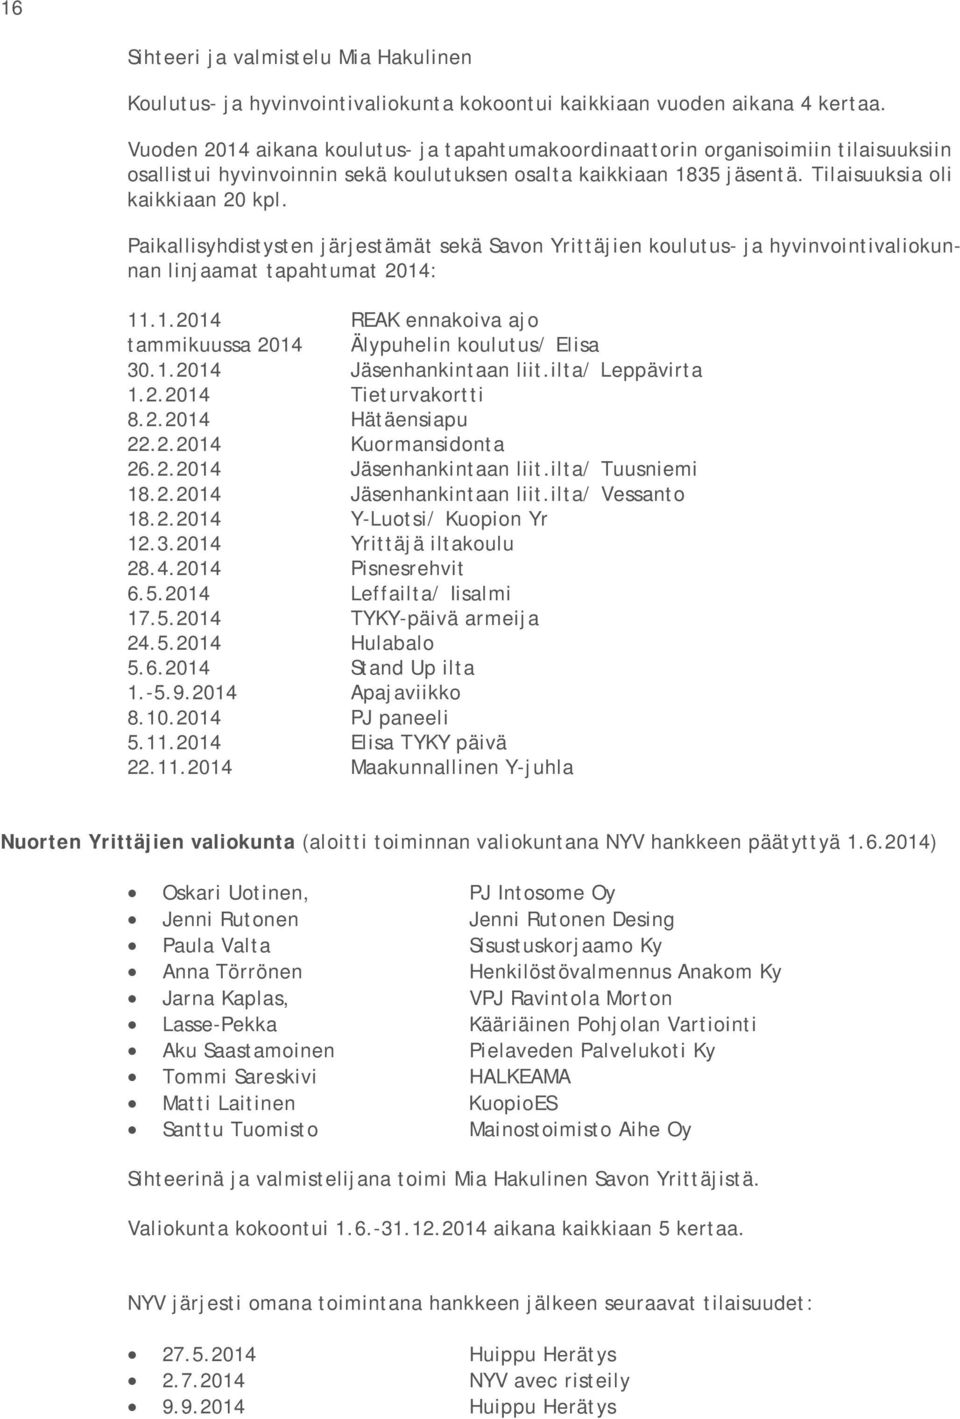 Paikallisyhdistysten järjestämät sekä Savon Yrittäjien koulutus- ja hyvinvointivaliokunnan linjaamat tapahtumat 2014: 11.1.2014 REAK ennakoiva ajo tammikuussa 2014 Älypuhelin koulutus/ Elisa 30.1.2014 Jäsenhankintaan liit.